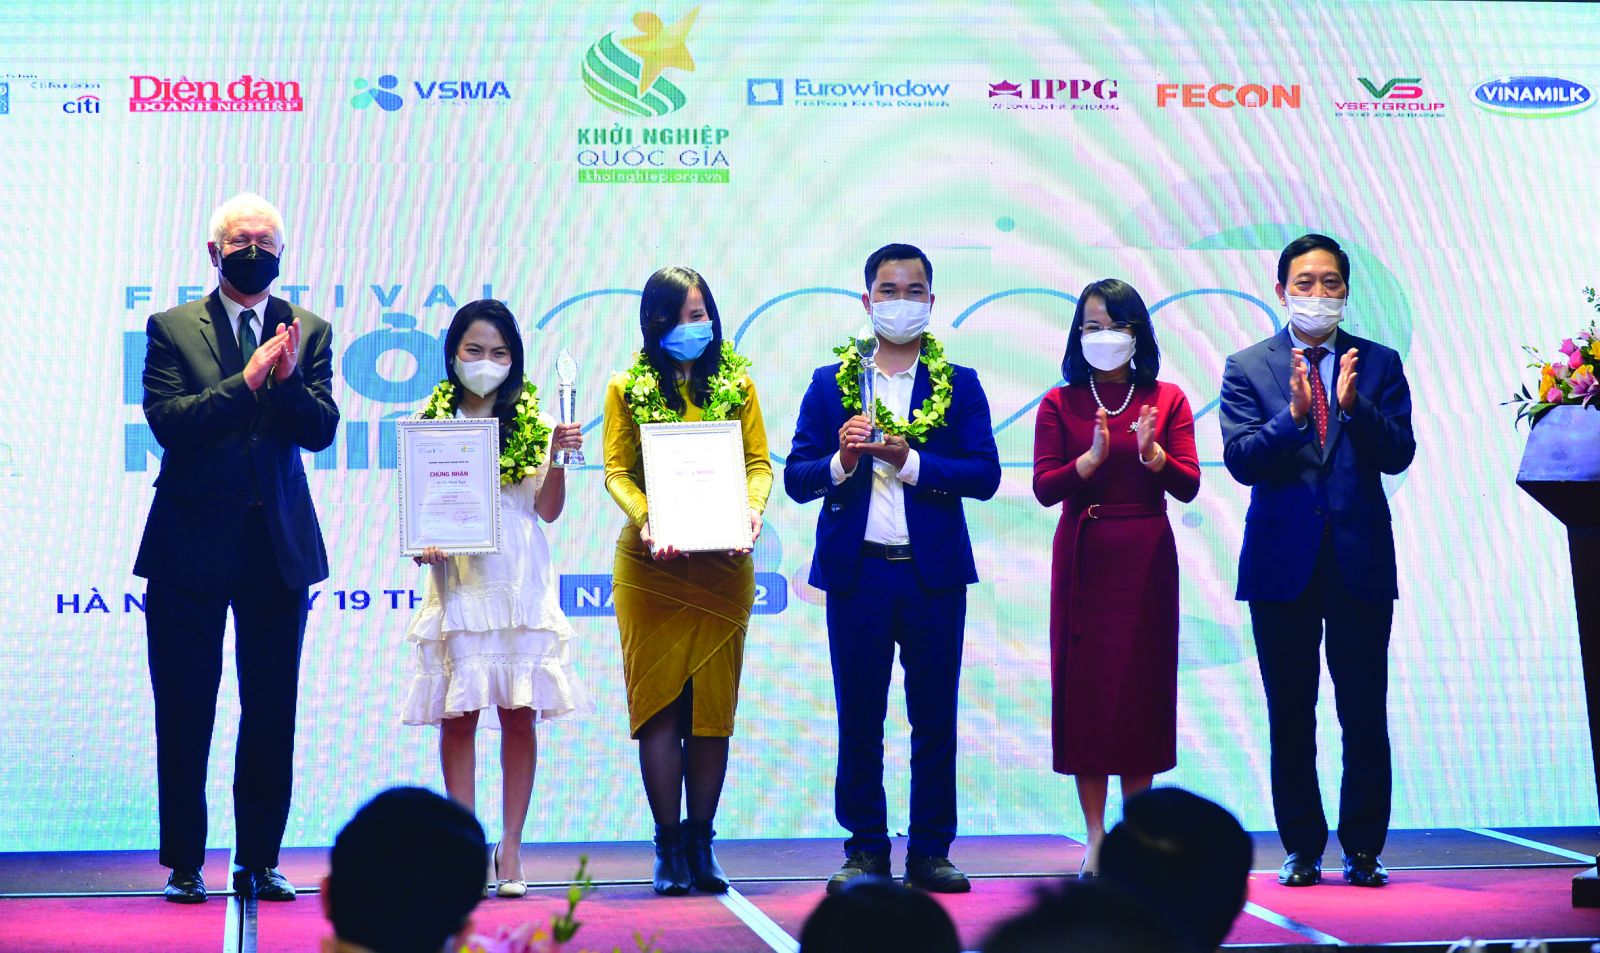  Võ Minh Nga (dự án Cô gái Bhnong) và Vũ Thị Liễu (dự án ECOSOI ) nhận giải Nhì Chương trình Phát triển Dự án Khởi nghiệp Quốc gia 2021.